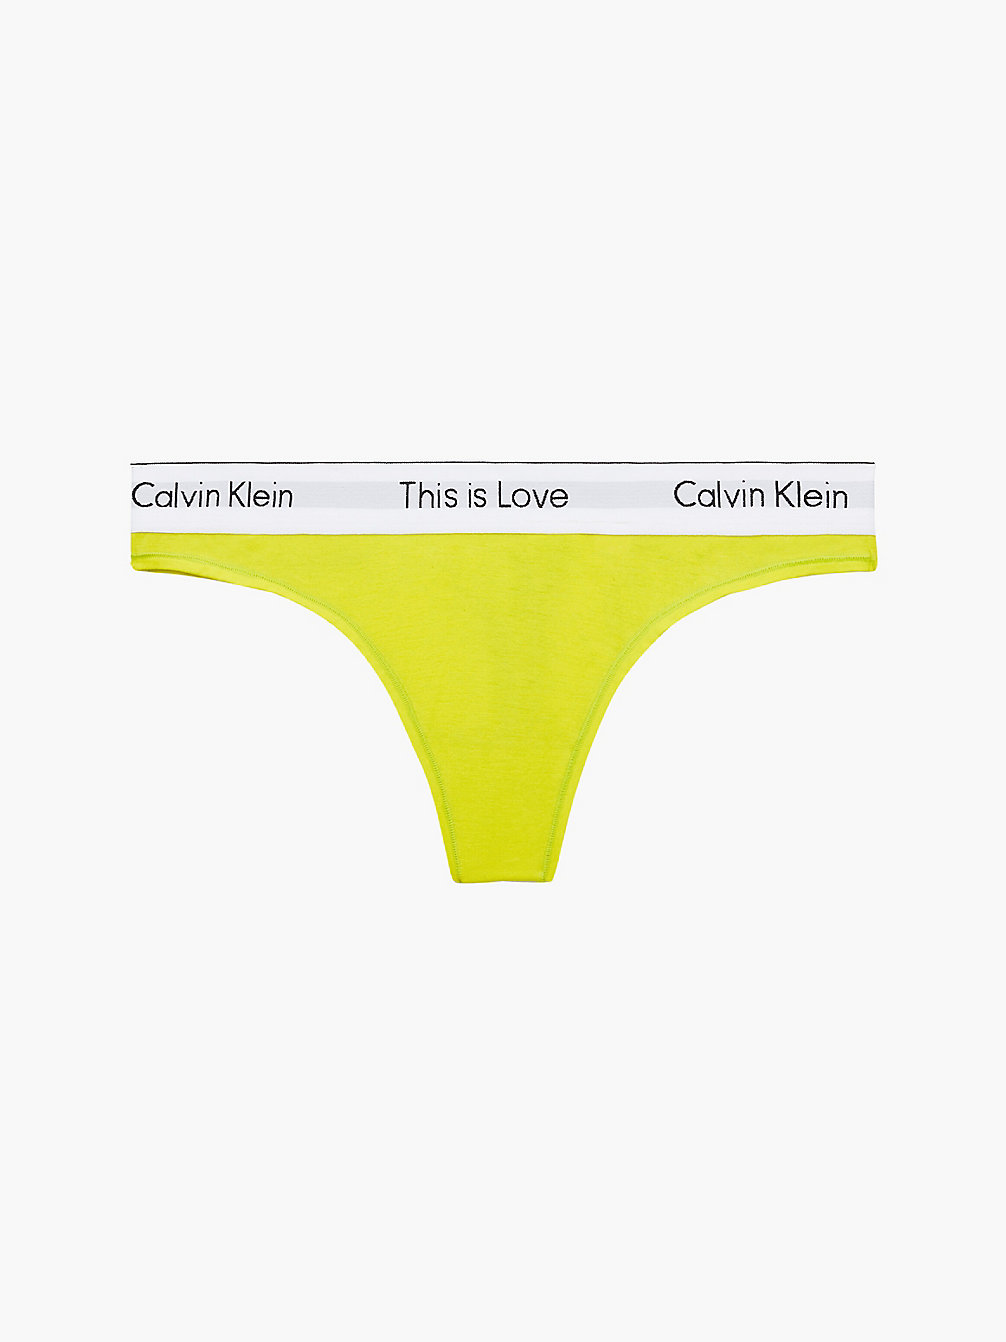 CITRINA > String - Pride > undefined Damen - Calvin Klein